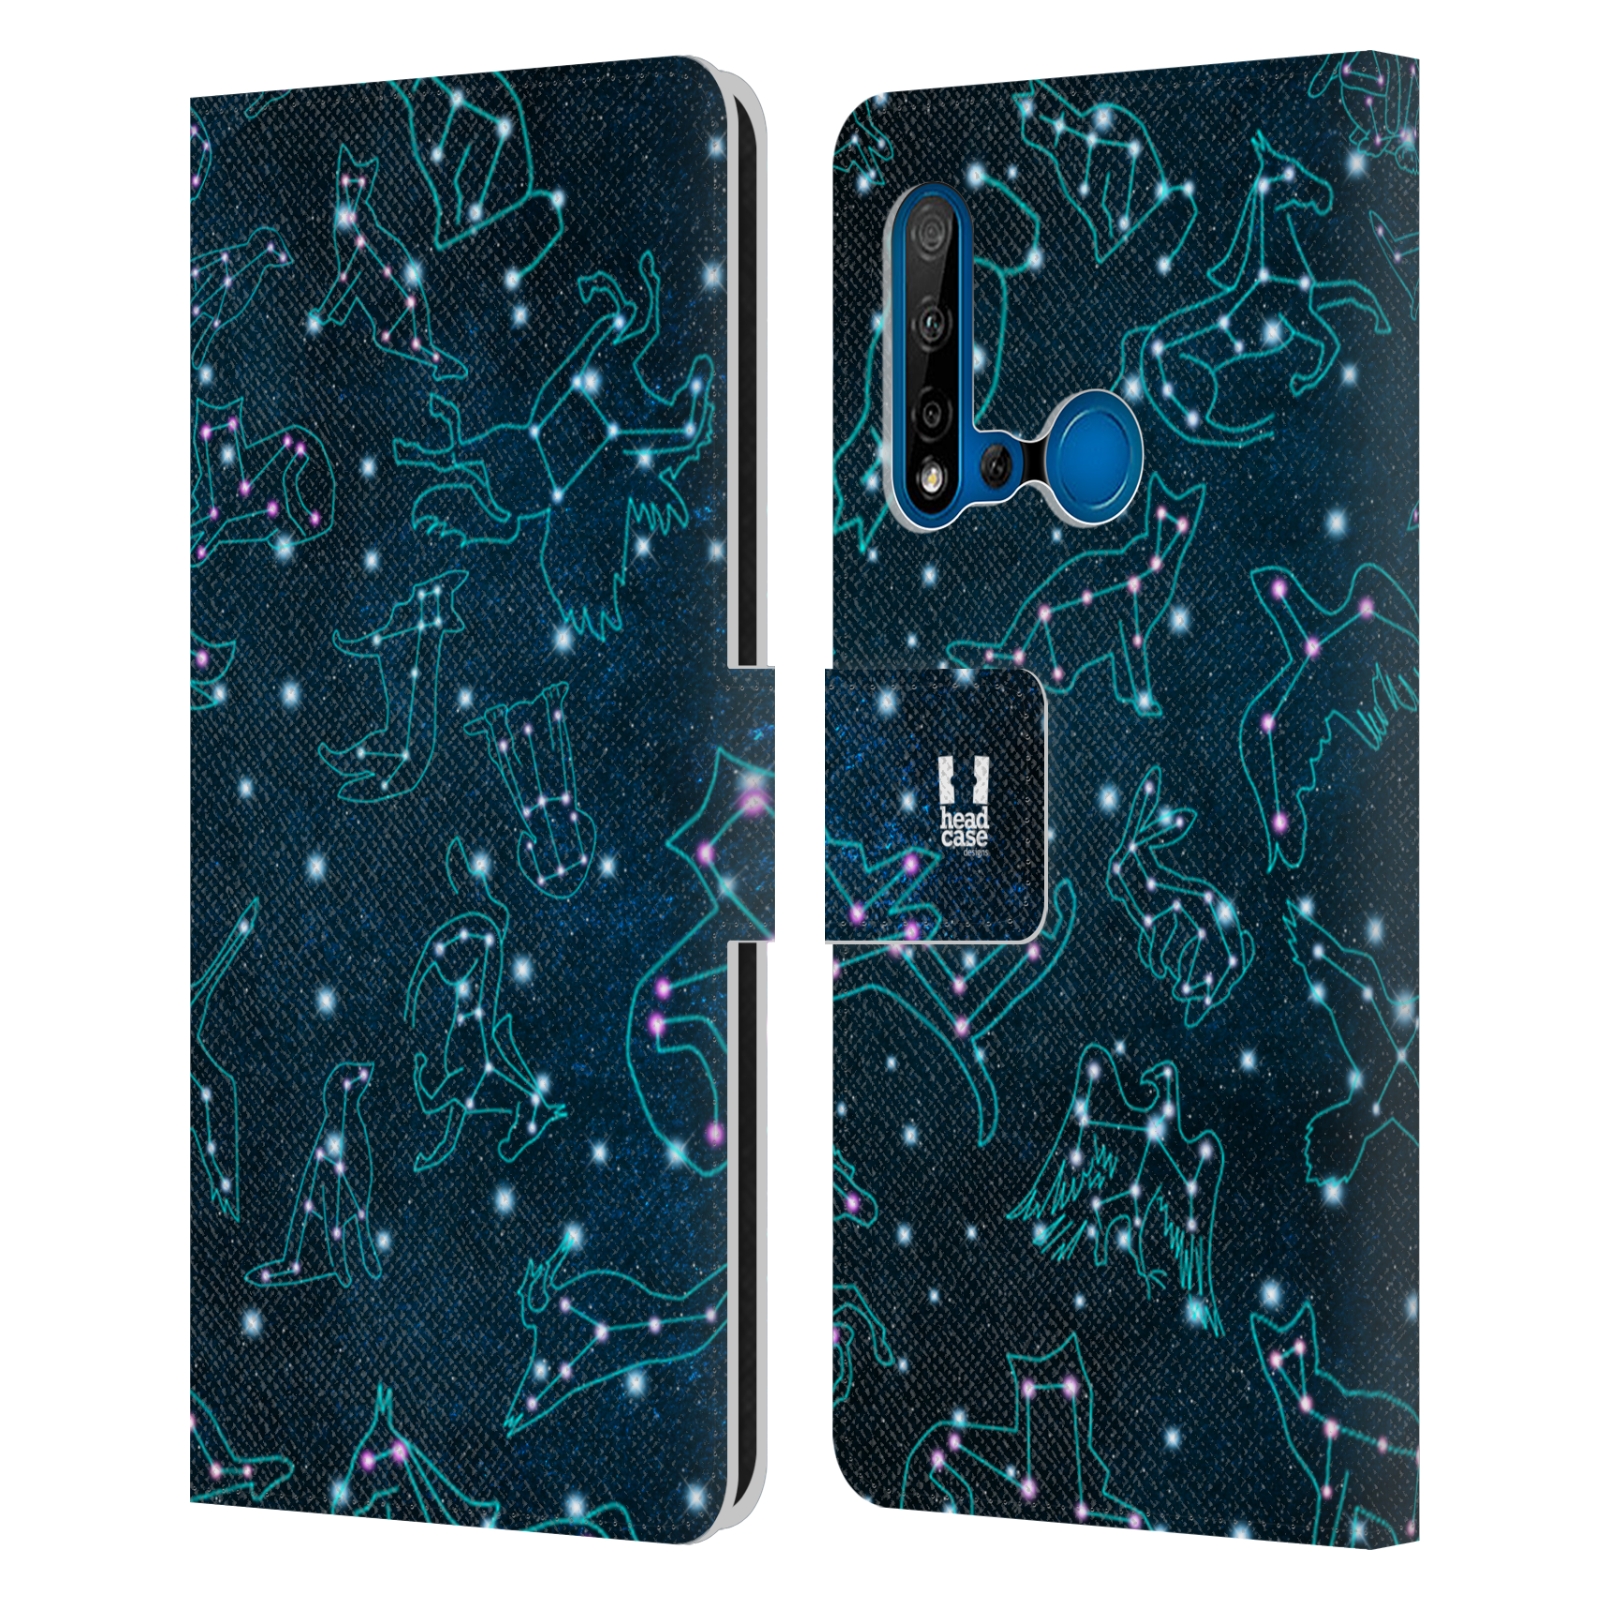 Pouzdro na mobil Huawei P20 LITE 2019 znamení zvíře modrá barva